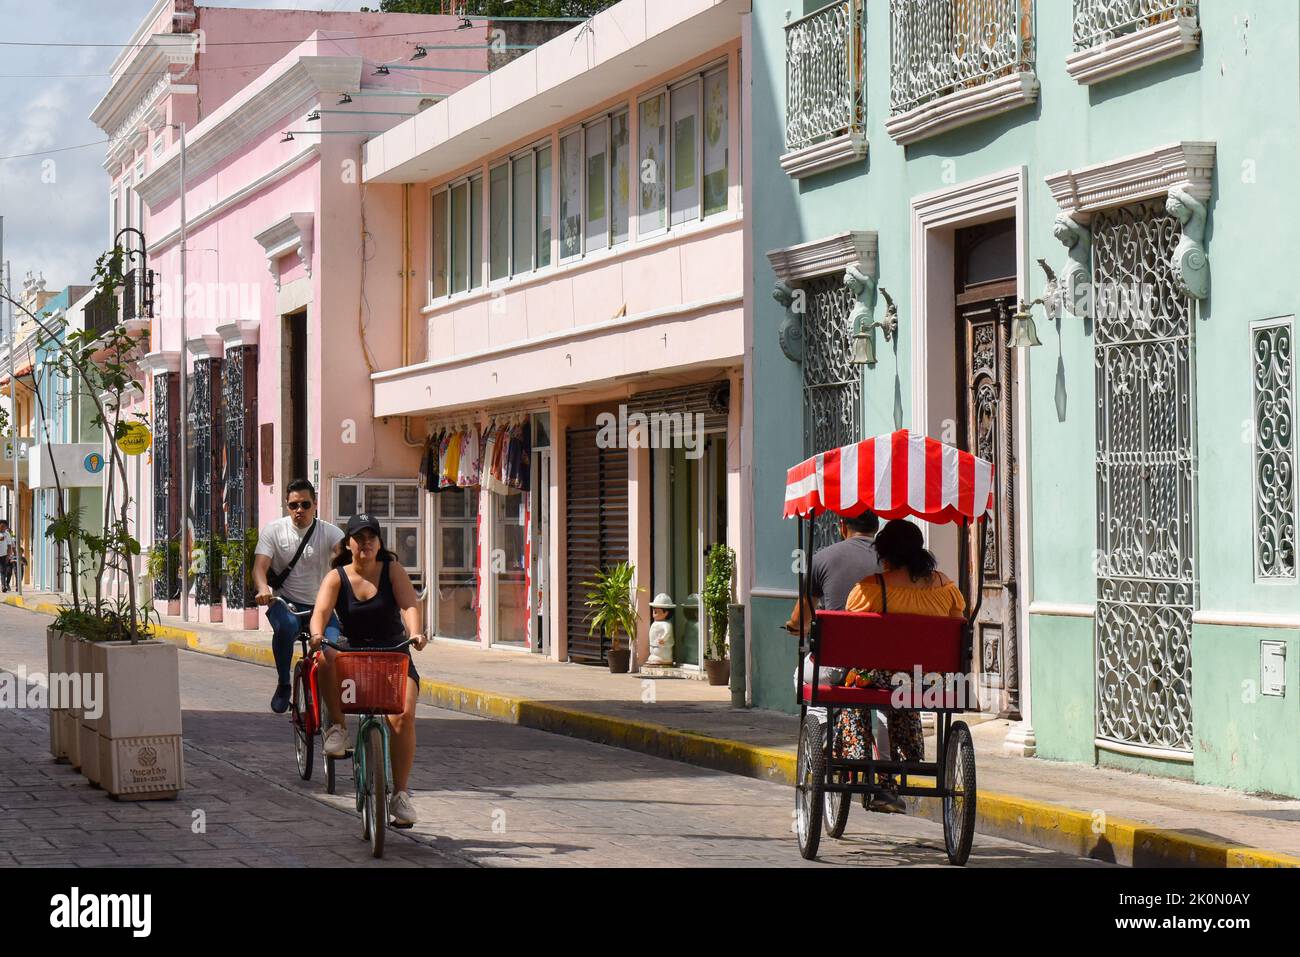 Biciruta es un evento de paseos en bicicleta comunitaria tradicional dominical donde la ciudad cierra algunas calles en el centro histórico para permitir a la gente montar en bicicleta y disfrutar de actividades al aire libre, Mérida, Yucatán, México Foto de stock